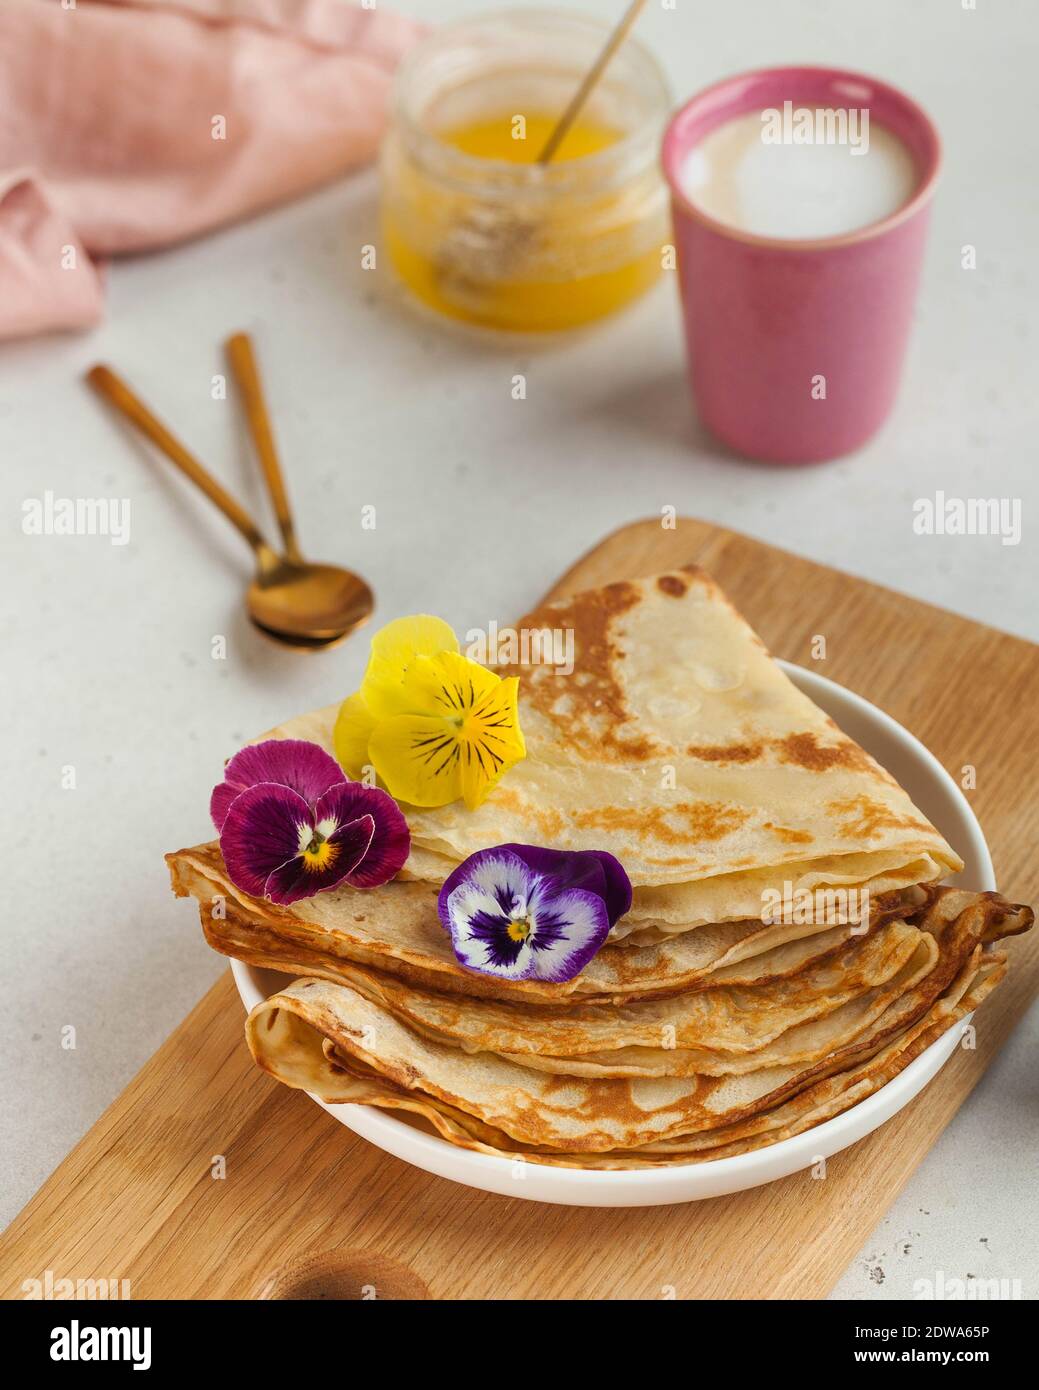 Leckere Crepes auf Tellern, Kaffeebecher. Konzept für Frühstück, Dessert,  Rezept, französische Küche, Maslenitsa Stockfotografie - Alamy